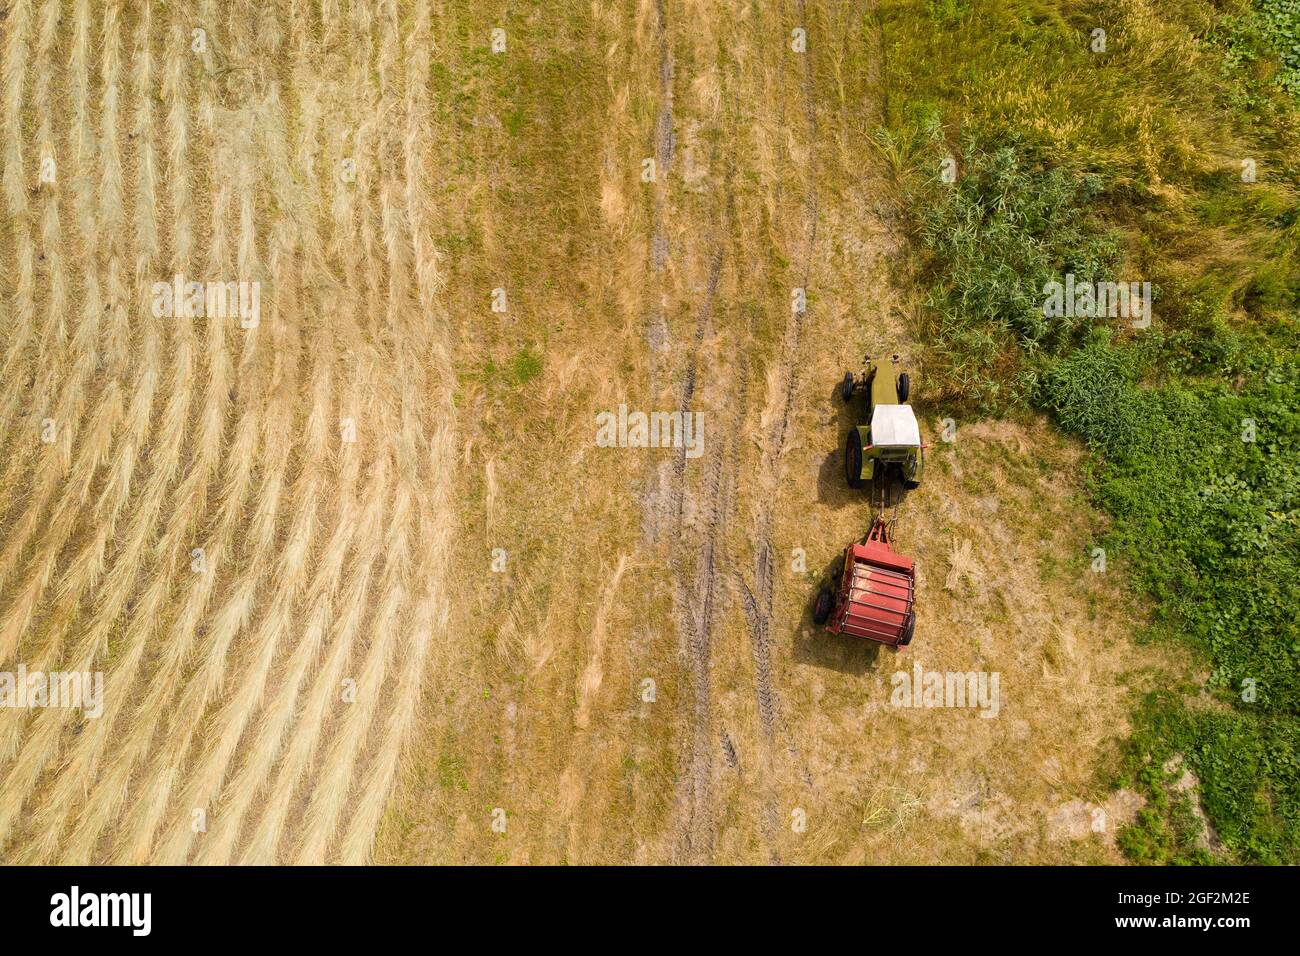 Trattore per la produzione di balle di paglia su campo di grano raccolto. Vista aerea Foto Stock